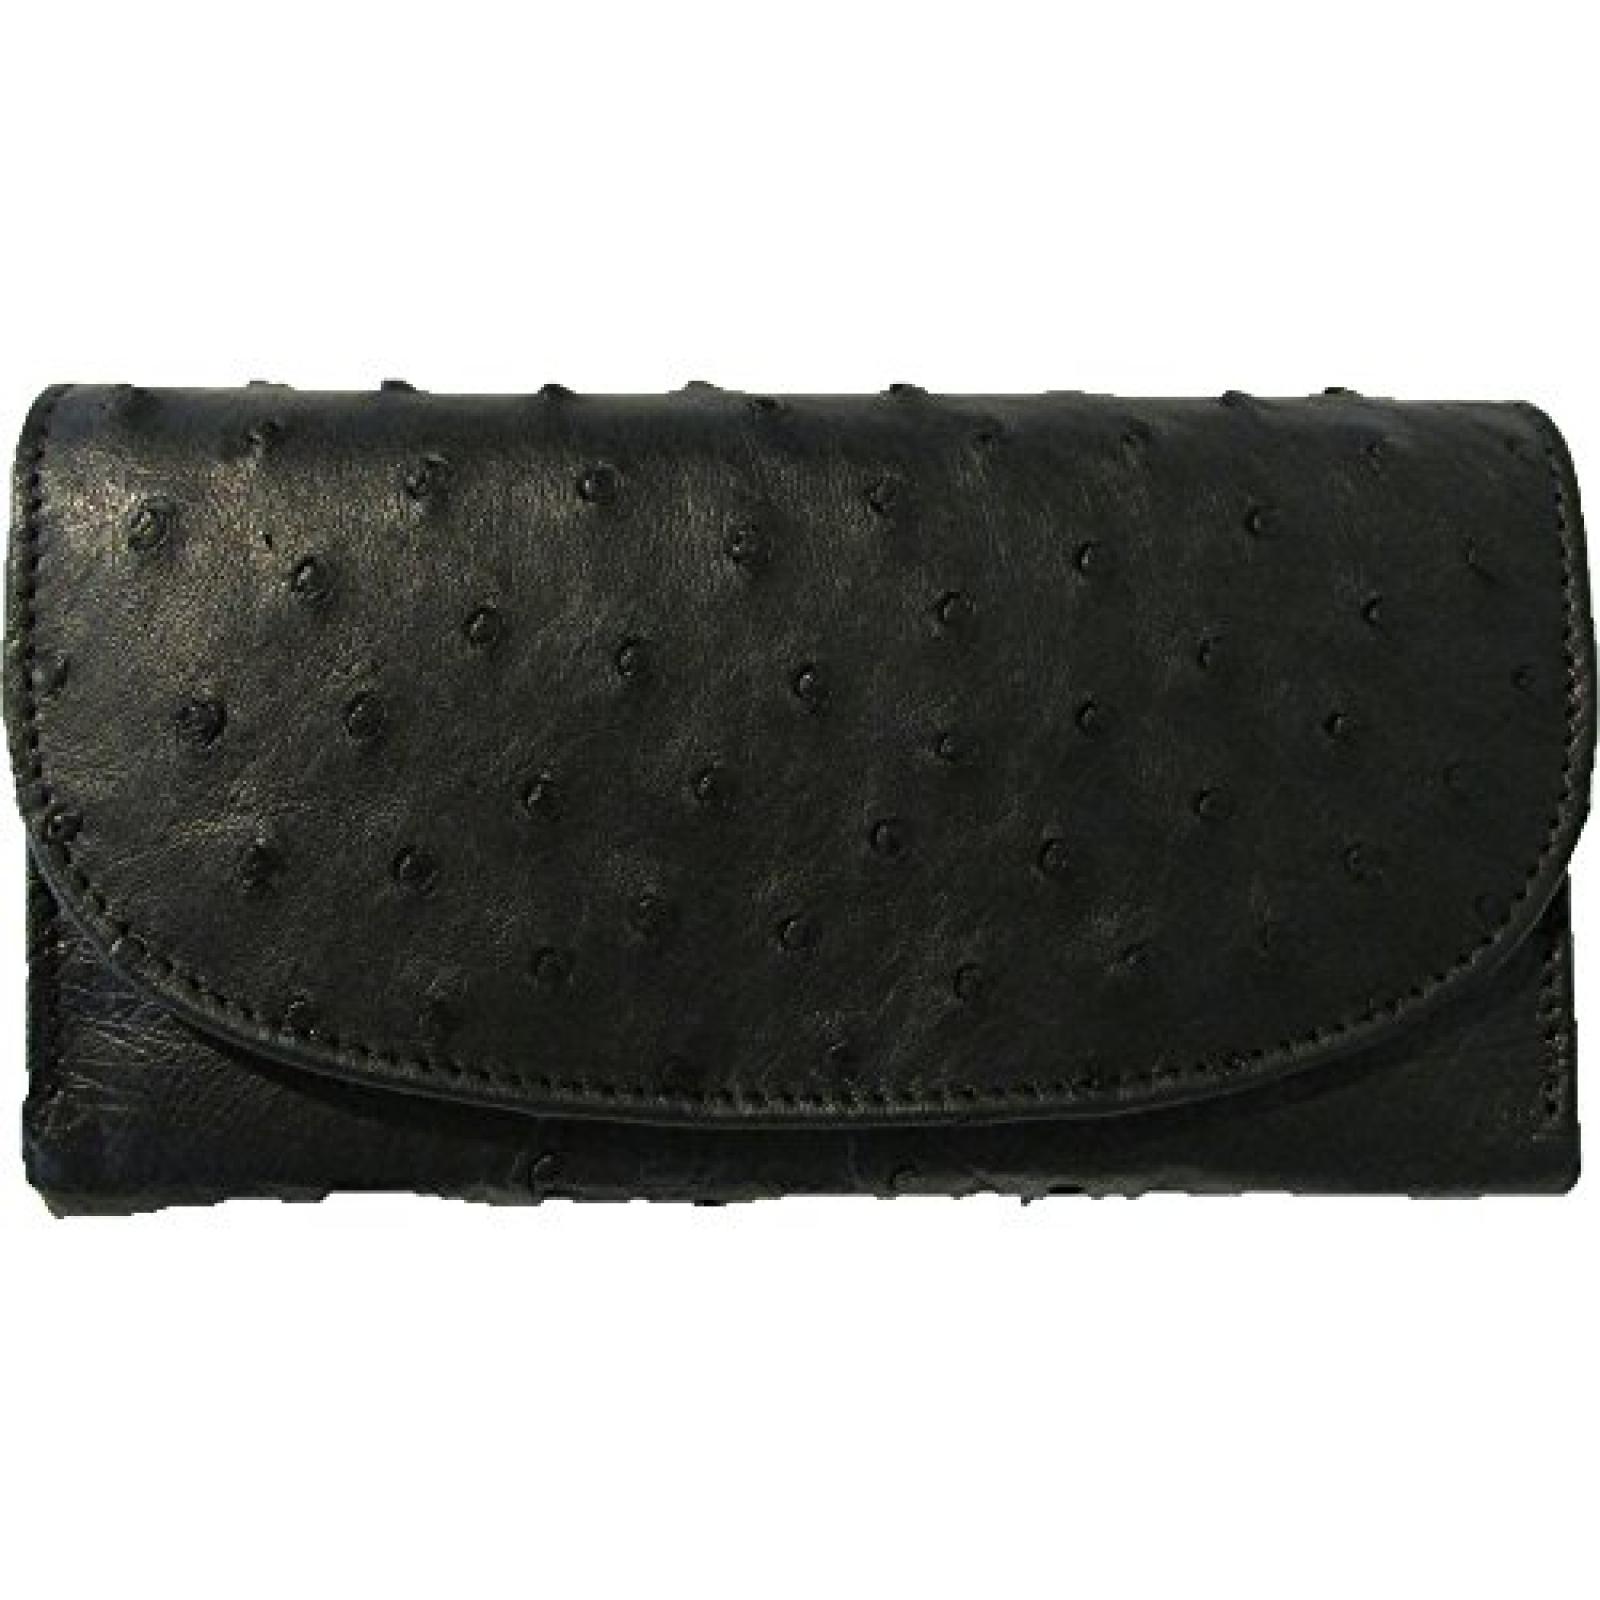 Damen Geldbörse aus echtem Straussenleder - 20x18x2,50cm - black 